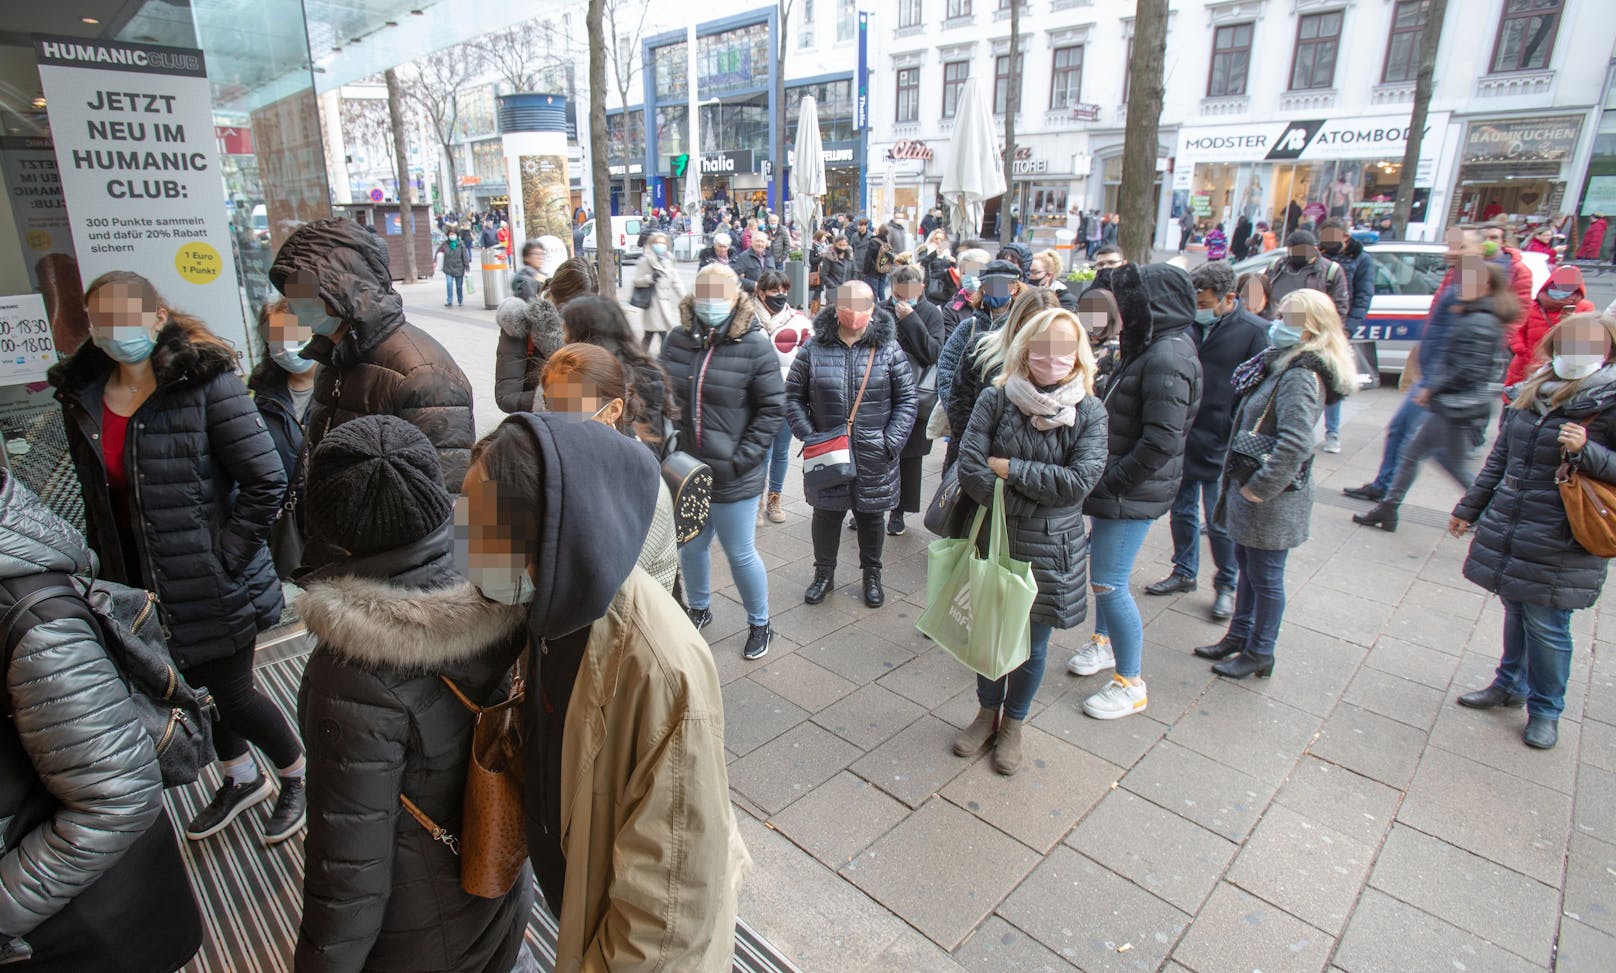 Shopping-Wahnsinn in Wien am Samstag. Zu diesen Bildern sagen die Experten: "Sie zeigen, dass es Maßnahmen braucht."